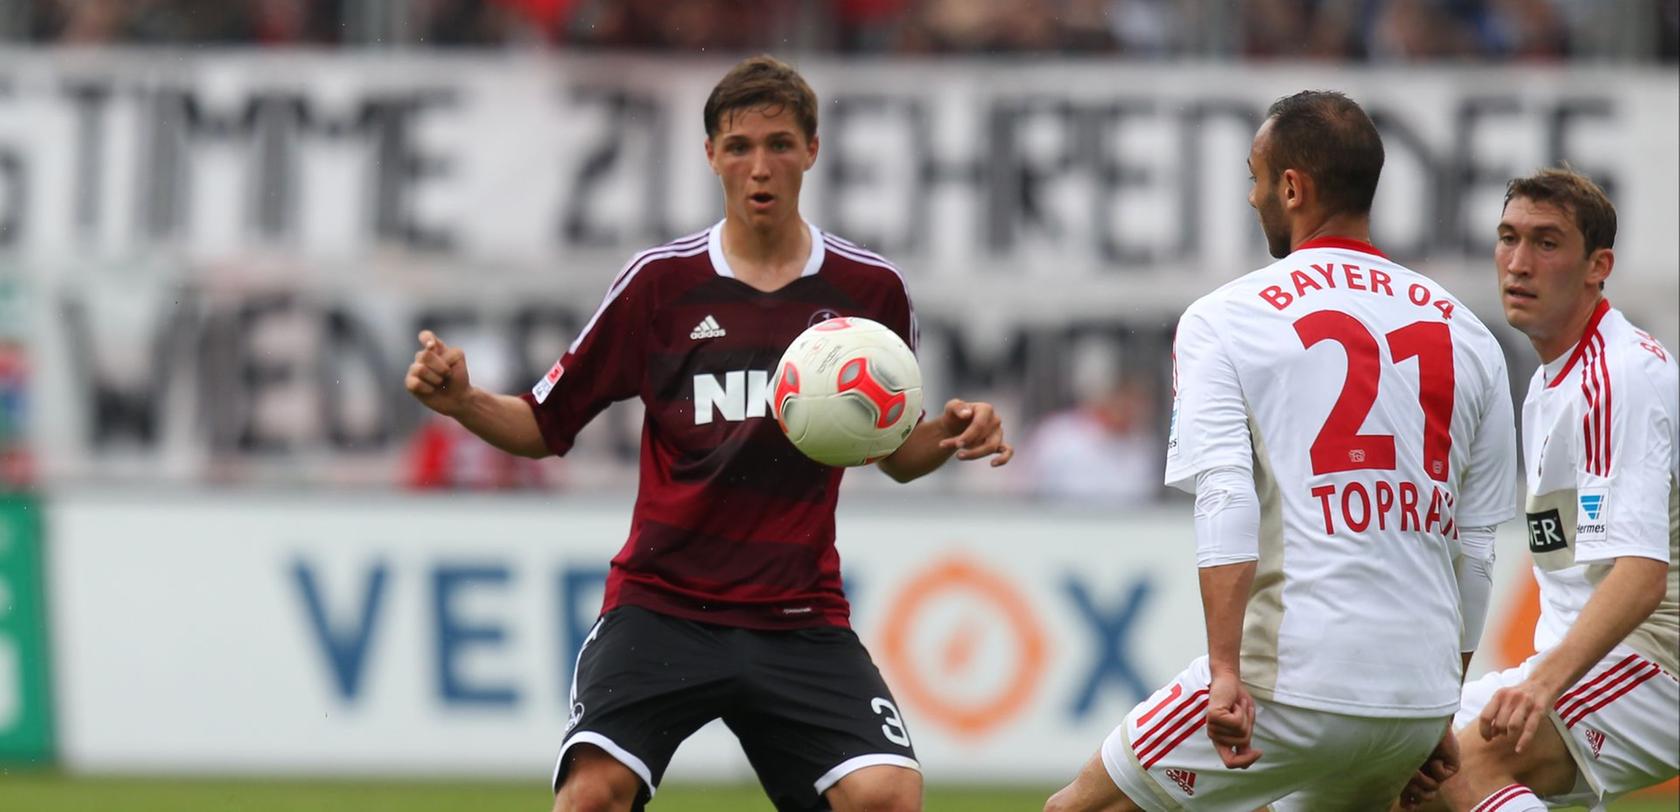 Niklas Stark und der 1. FC Nürnberg haben sich erneut ihrer Zuneigung vertraglich versichert.